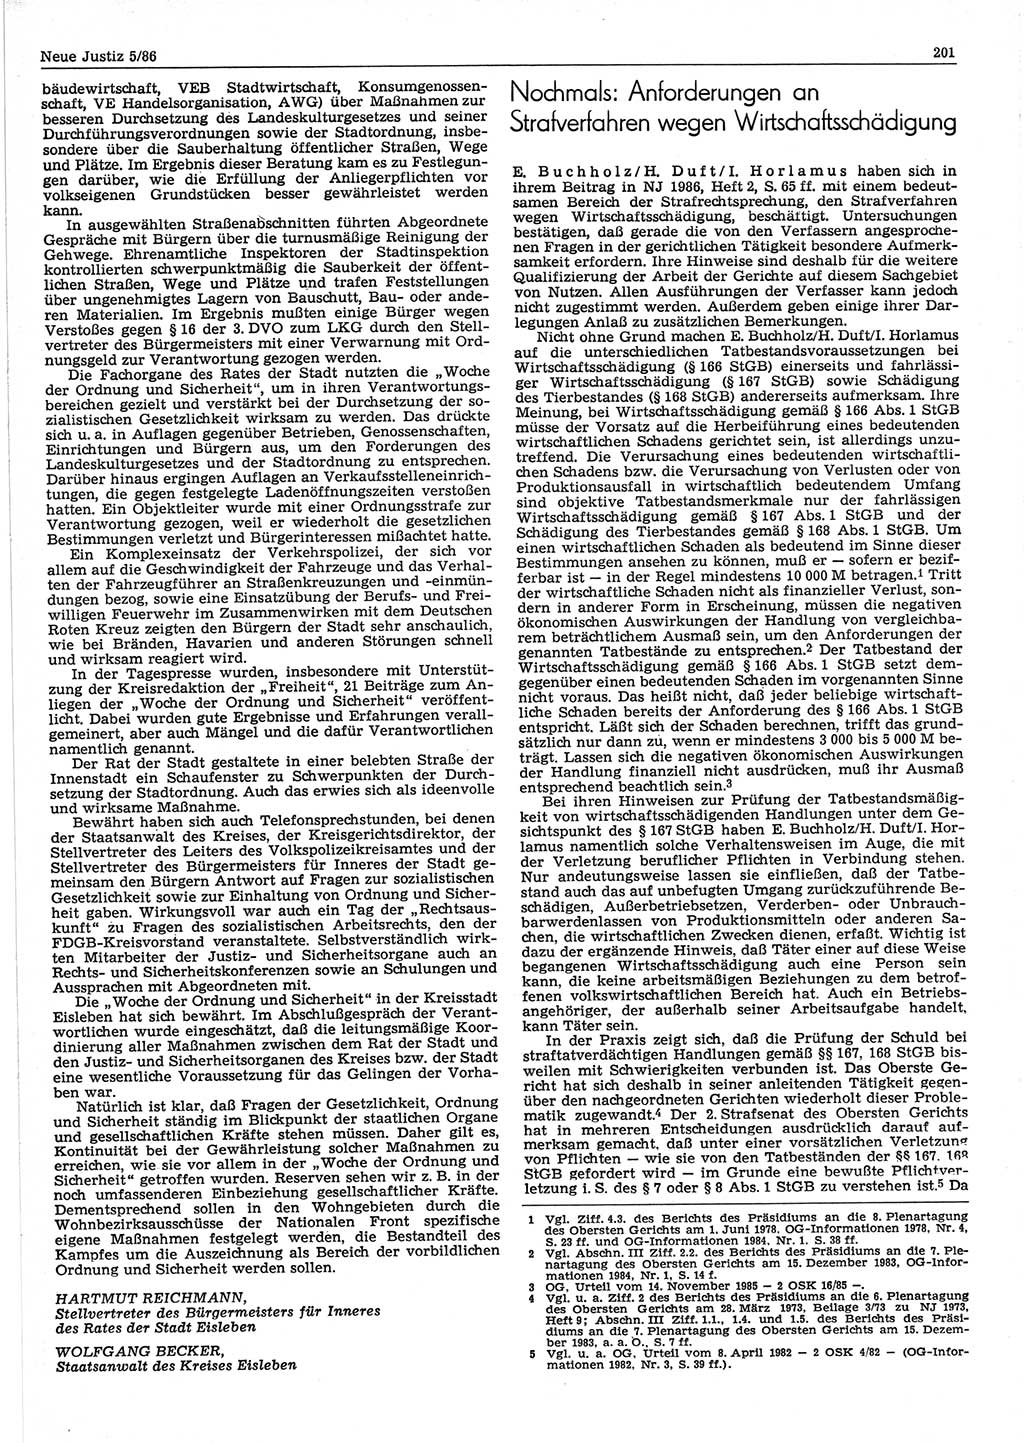 Neue Justiz (NJ), Zeitschrift für sozialistisches Recht und Gesetzlichkeit [Deutsche Demokratische Republik (DDR)], 40. Jahrgang 1986, Seite 201 (NJ DDR 1986, S. 201)